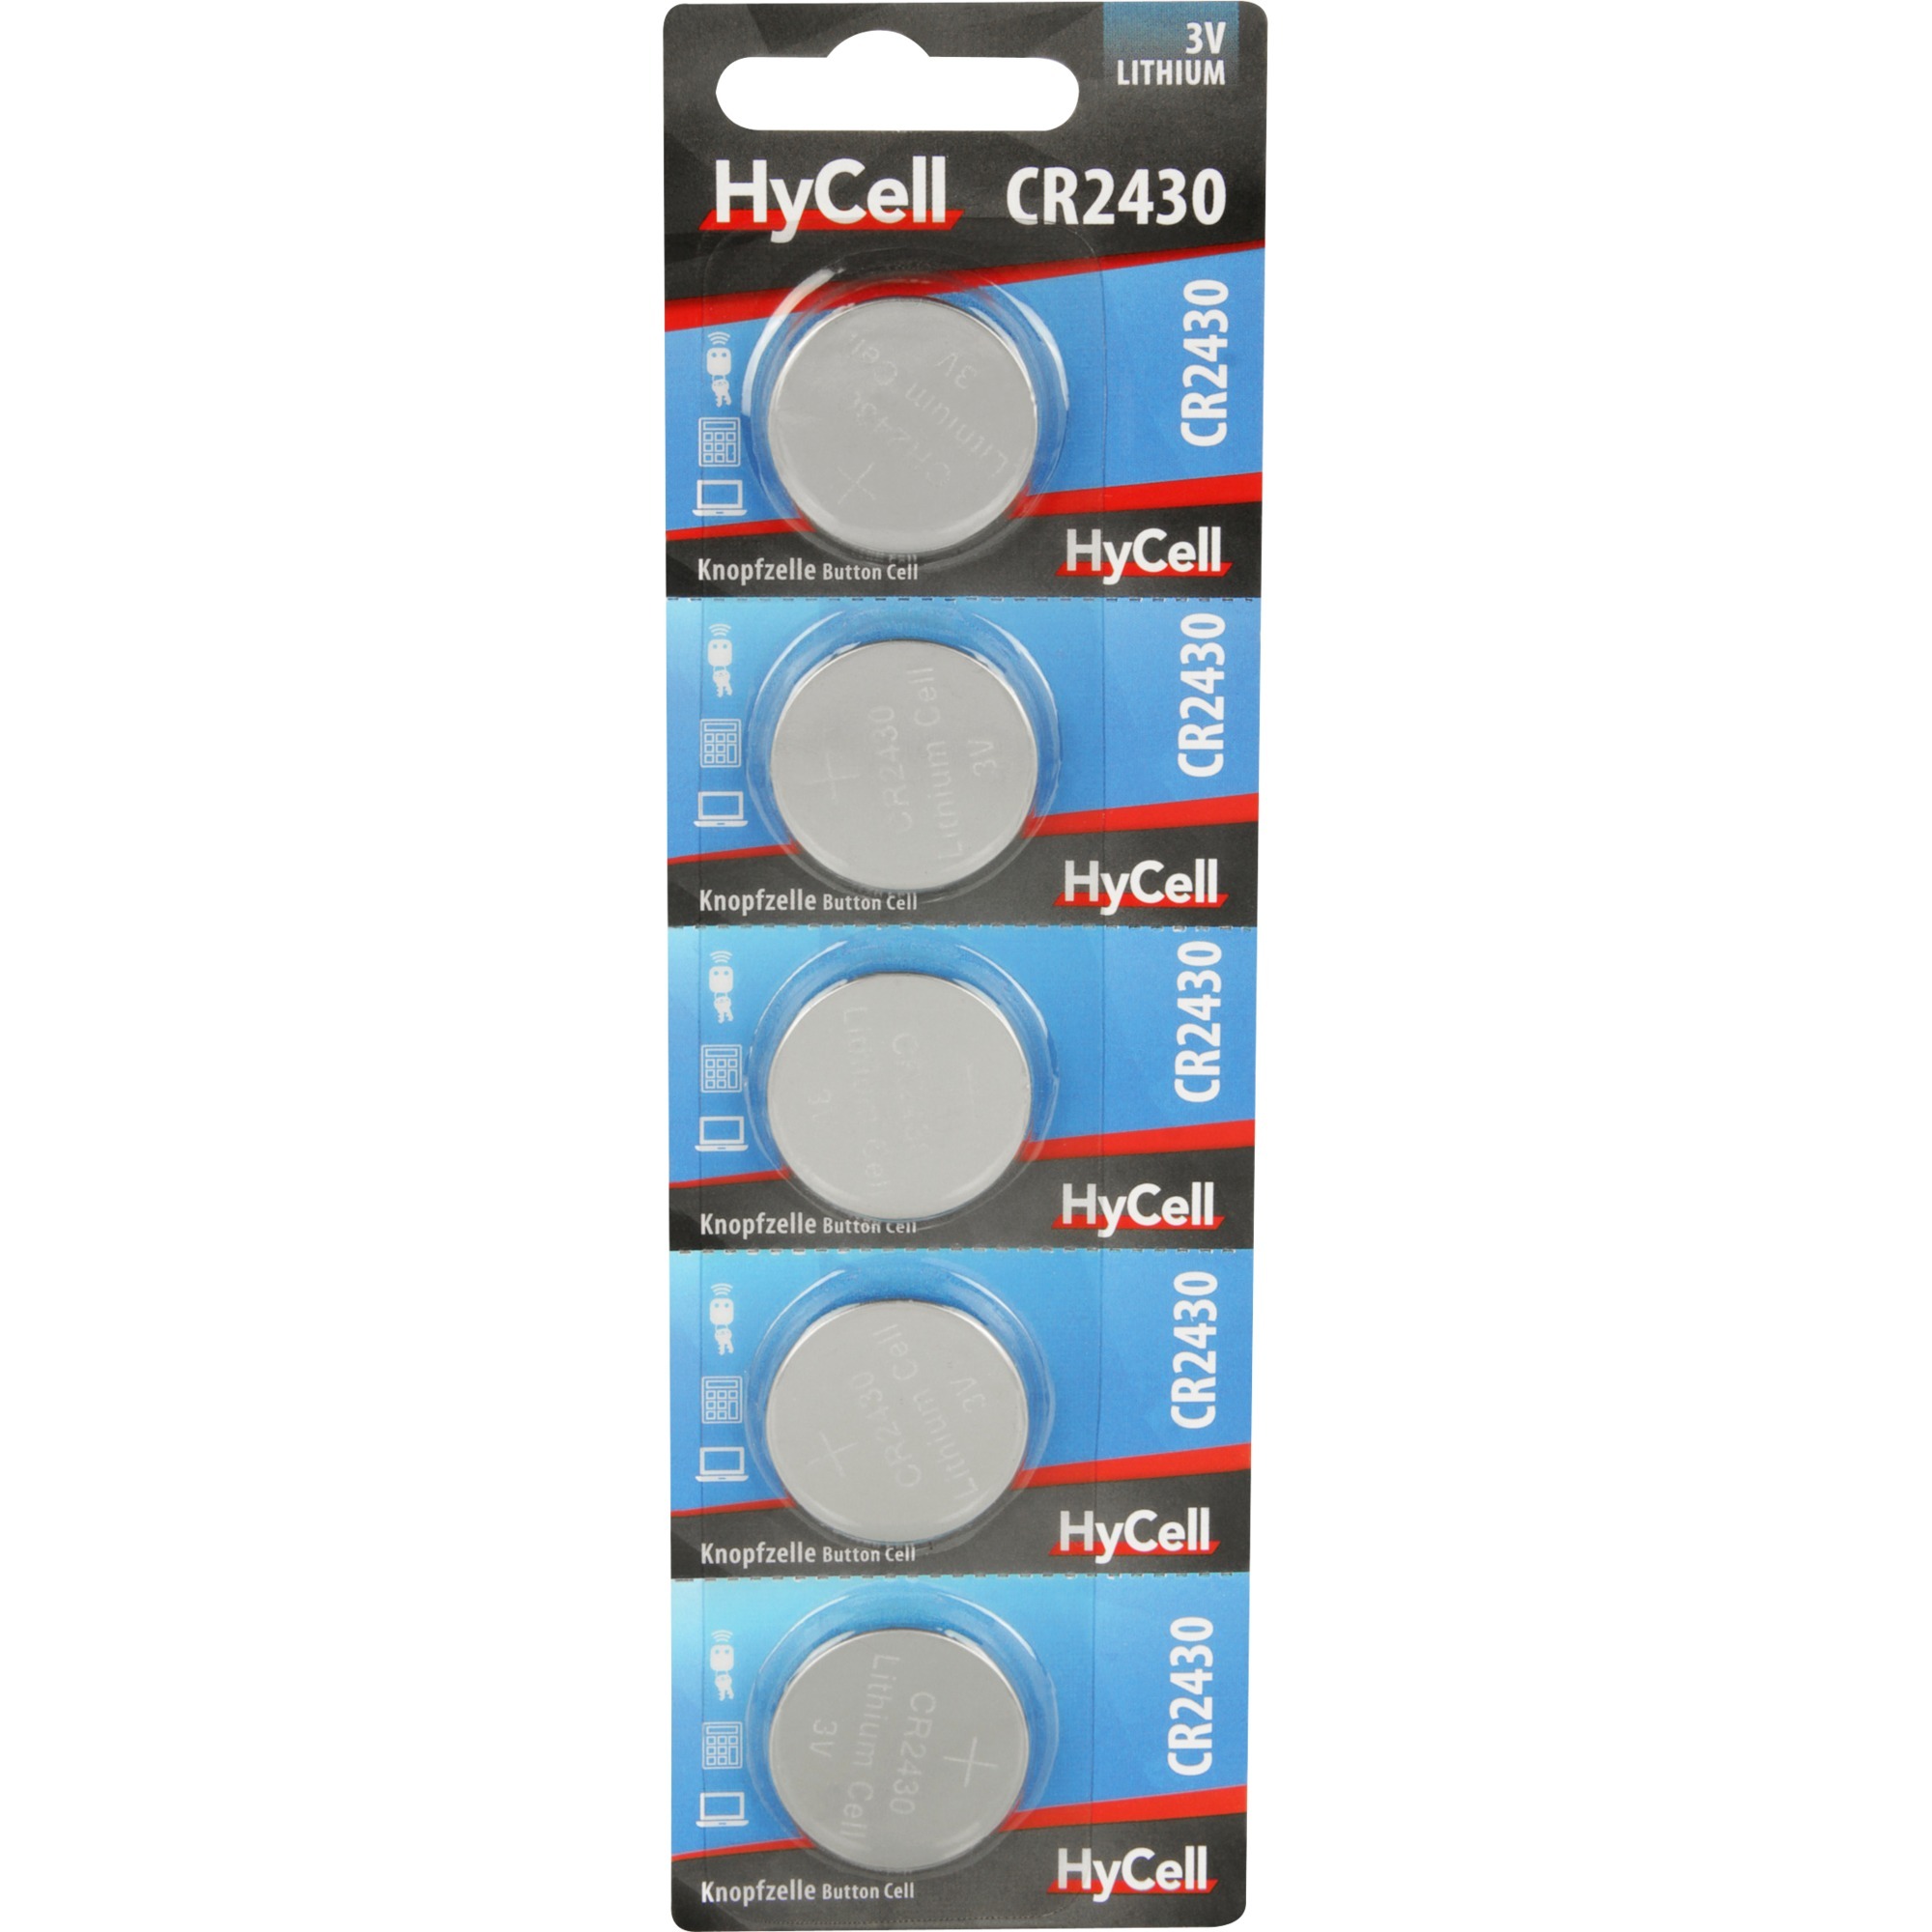 Image of Alternate - HyCell Lithium Knopfzellen CR2430, Batterie online einkaufen bei Alternate